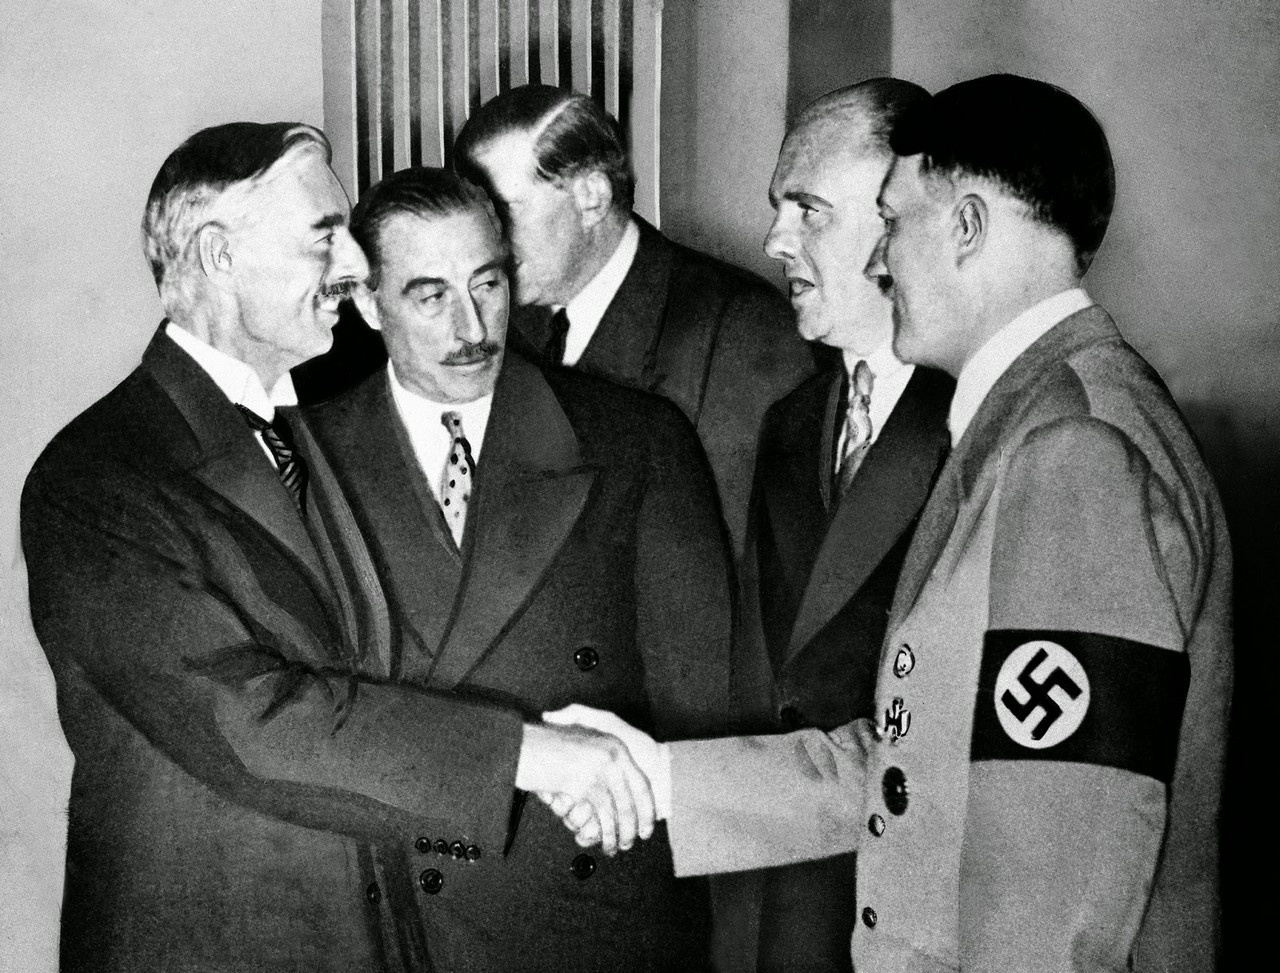 Рукопожатие Адольфа Гитлера и премьер-министра Великобритании Невилла Чемберлена на Мюнхенской конференции («Мюнхенский сговор»), 30 сентября 1938 г.